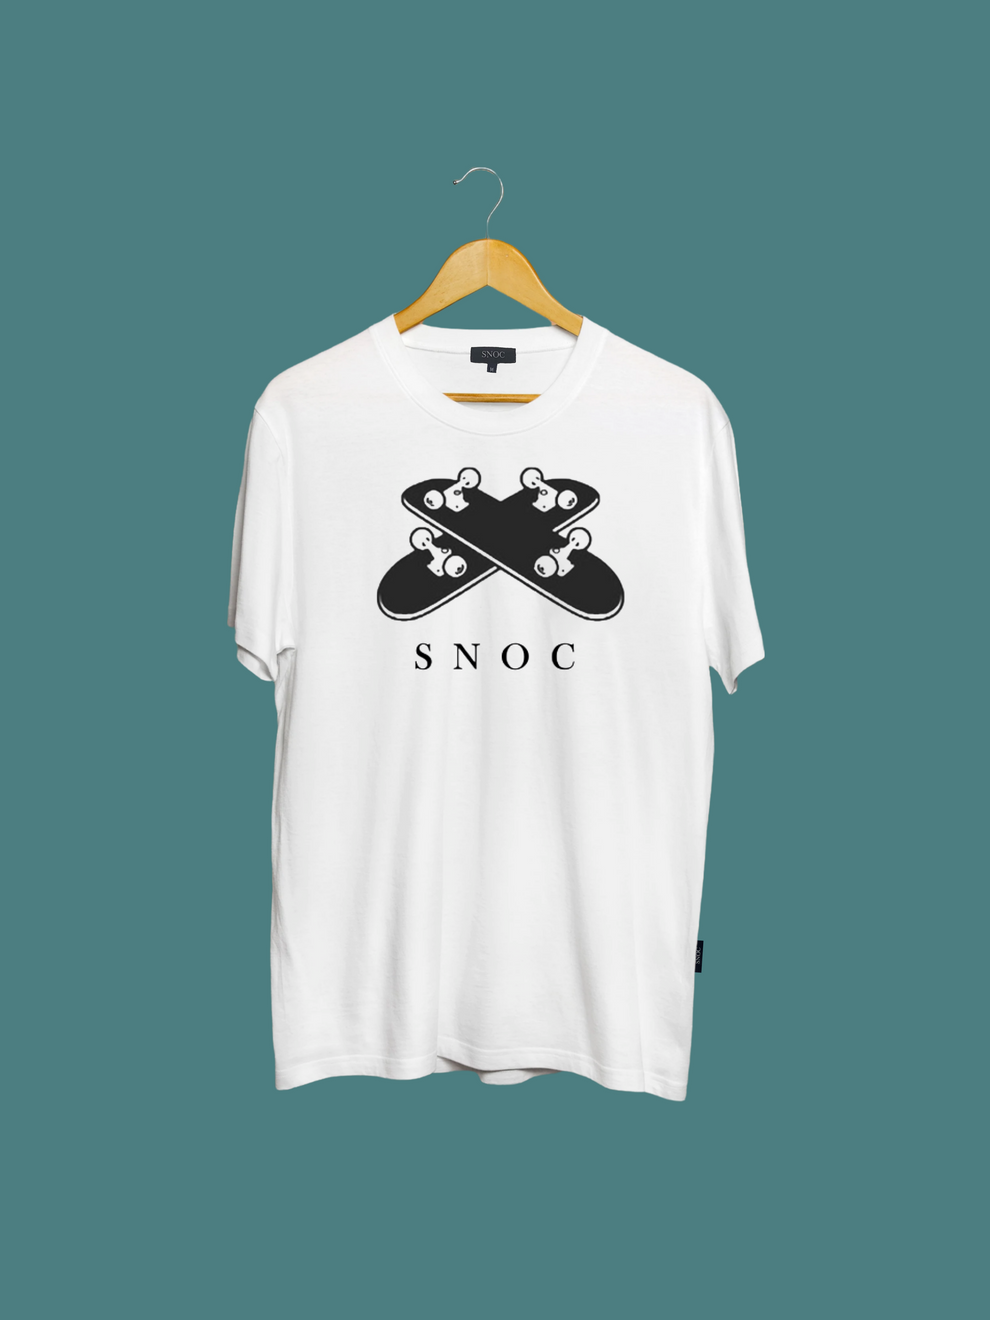 T-shirt SNOC (Galice) SKATE